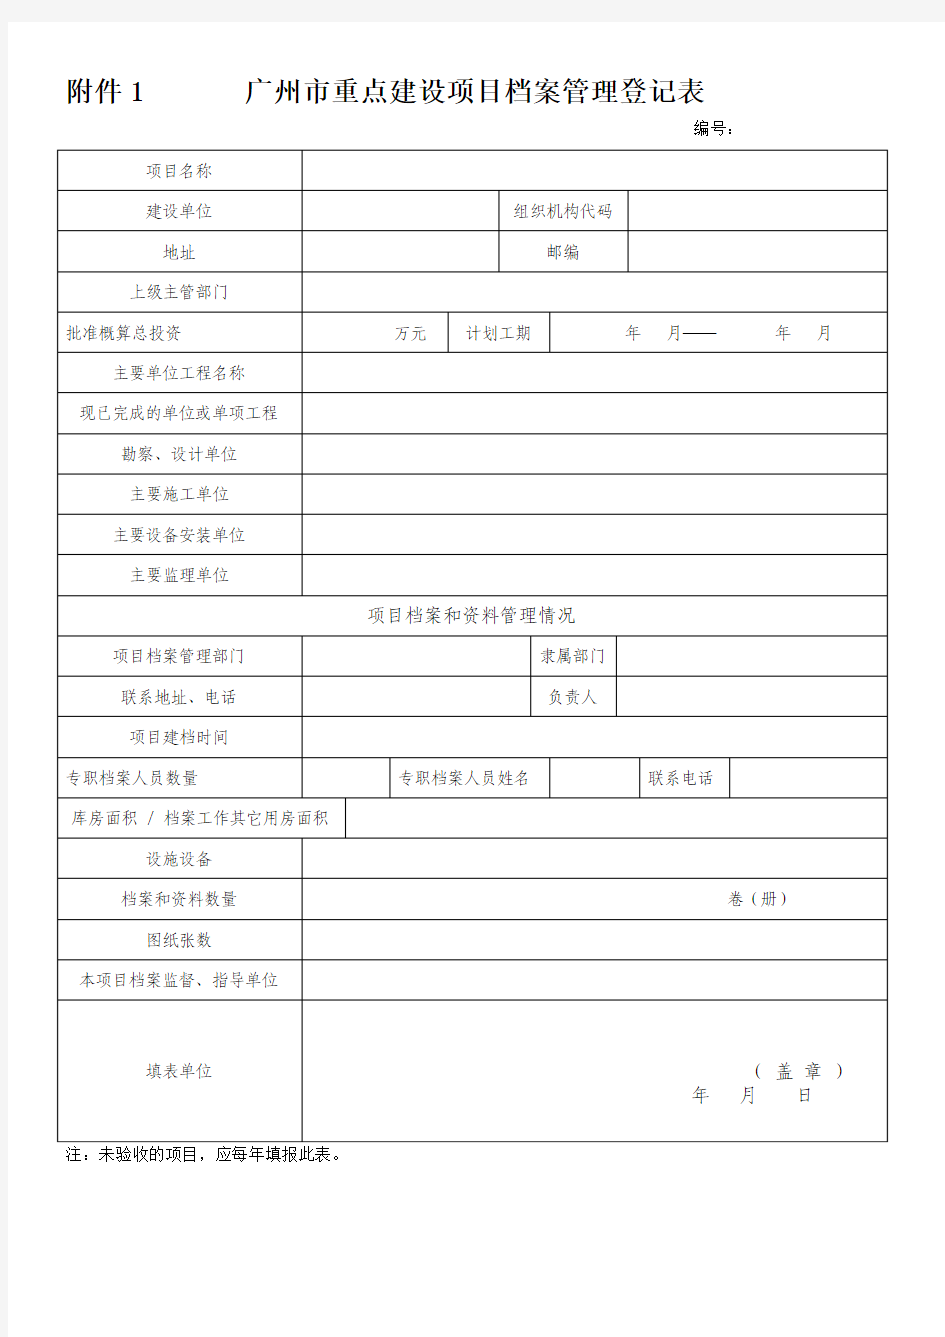 广州市重点建设项目档案管理登记表